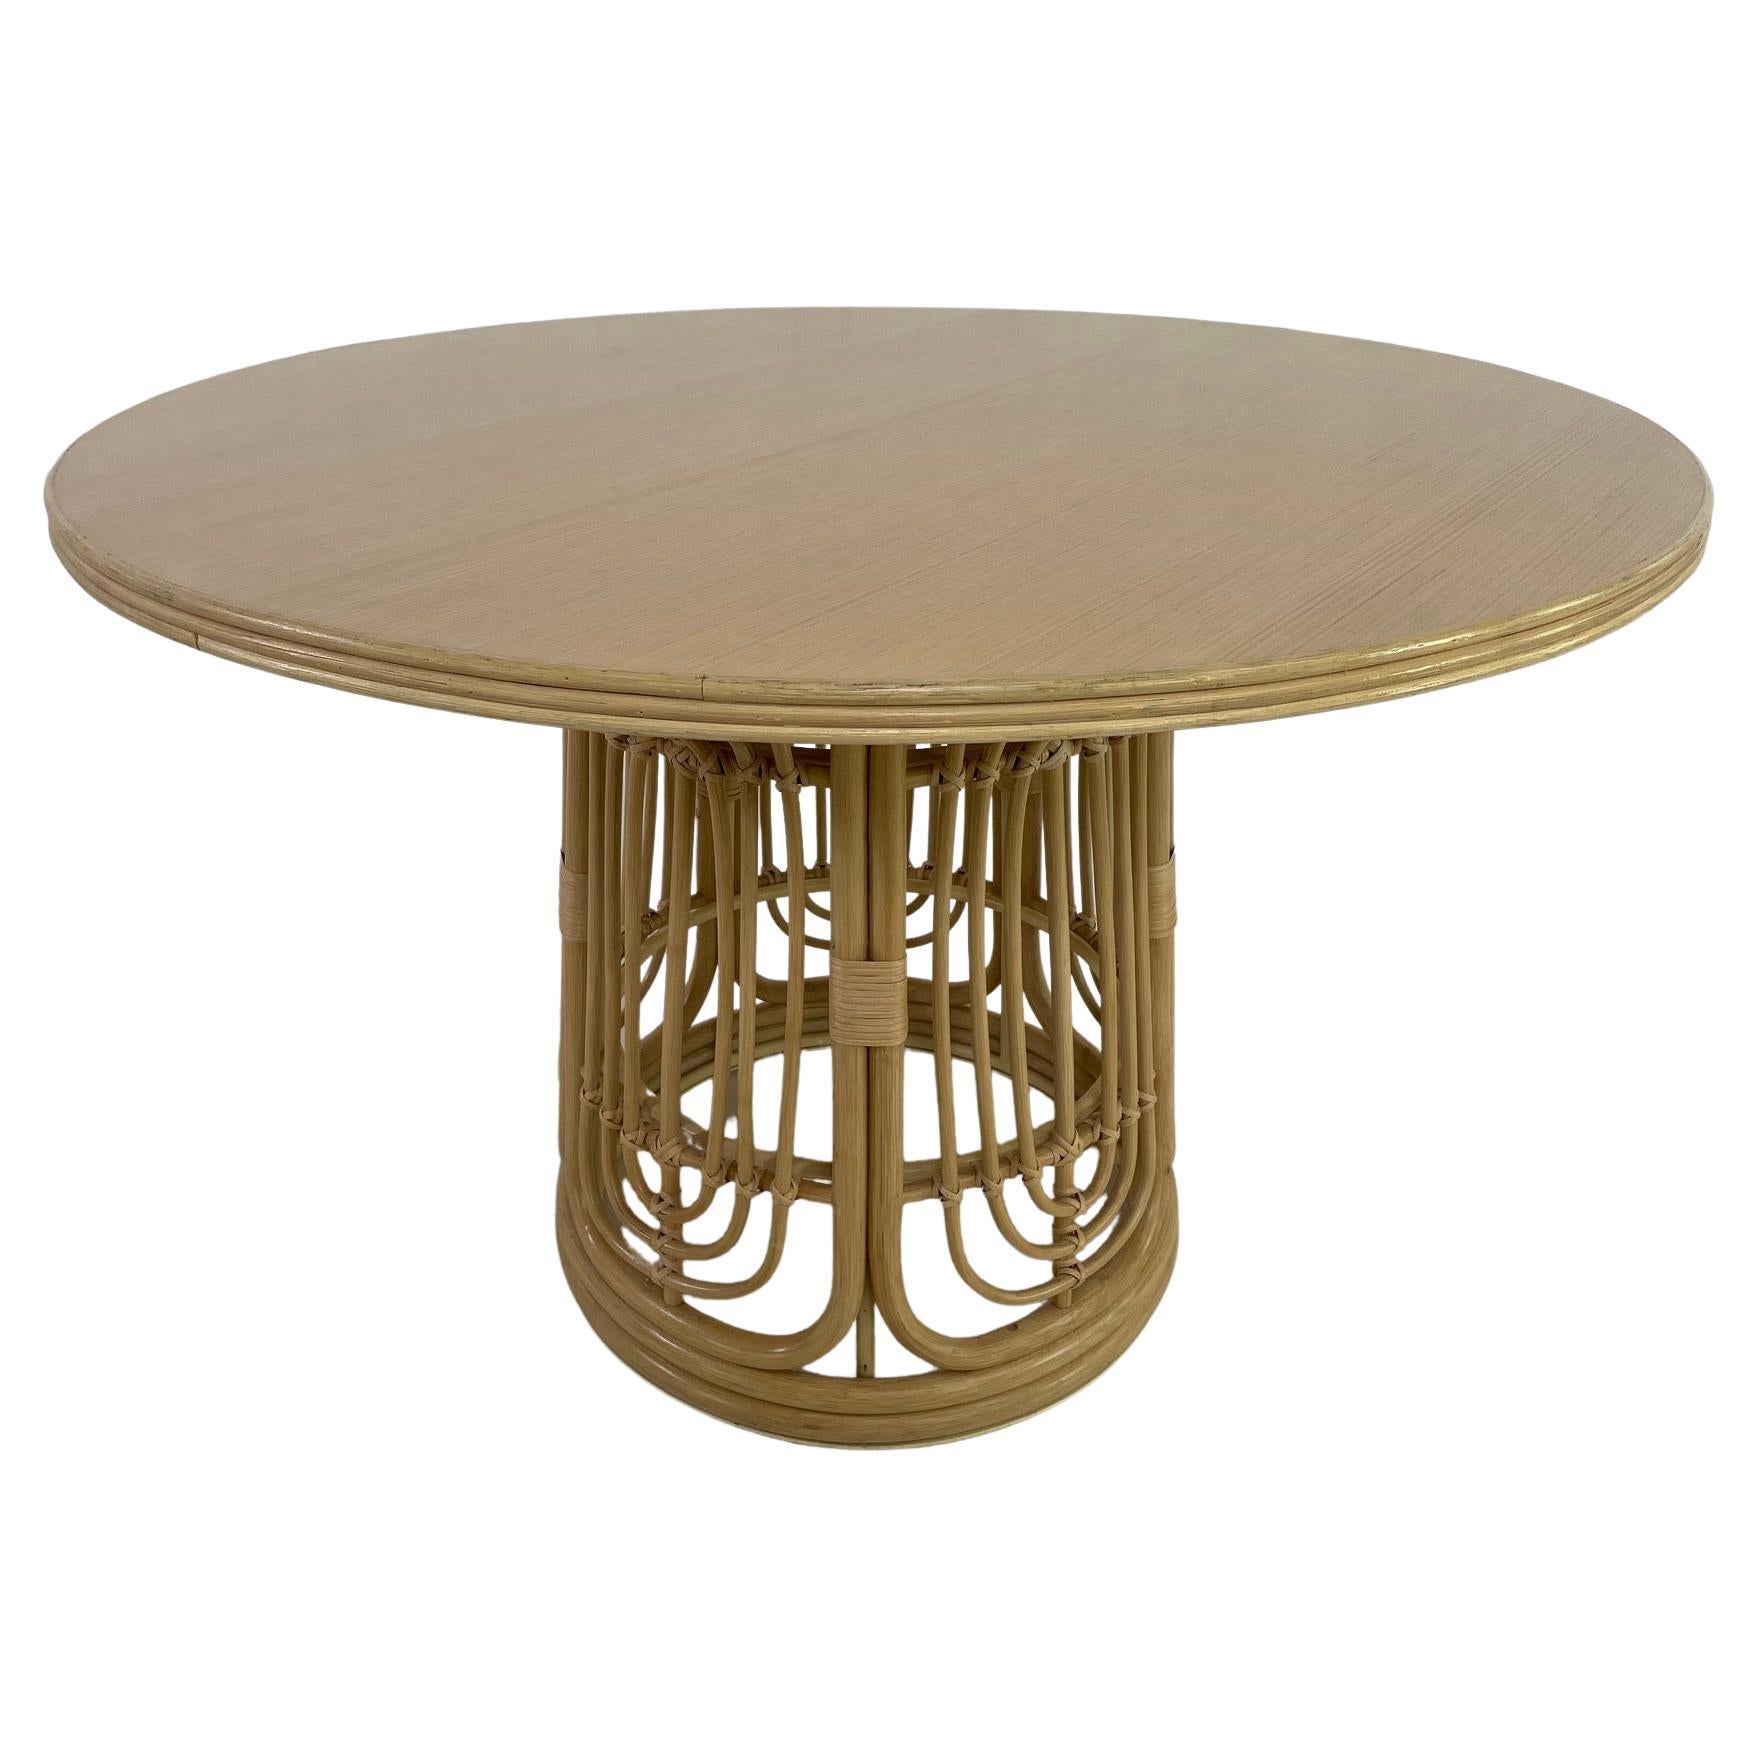 1970er Jahre Design Stil Runder Rattan Sockel Holz Tablett Esstisch Sockel geriffelt Tisch